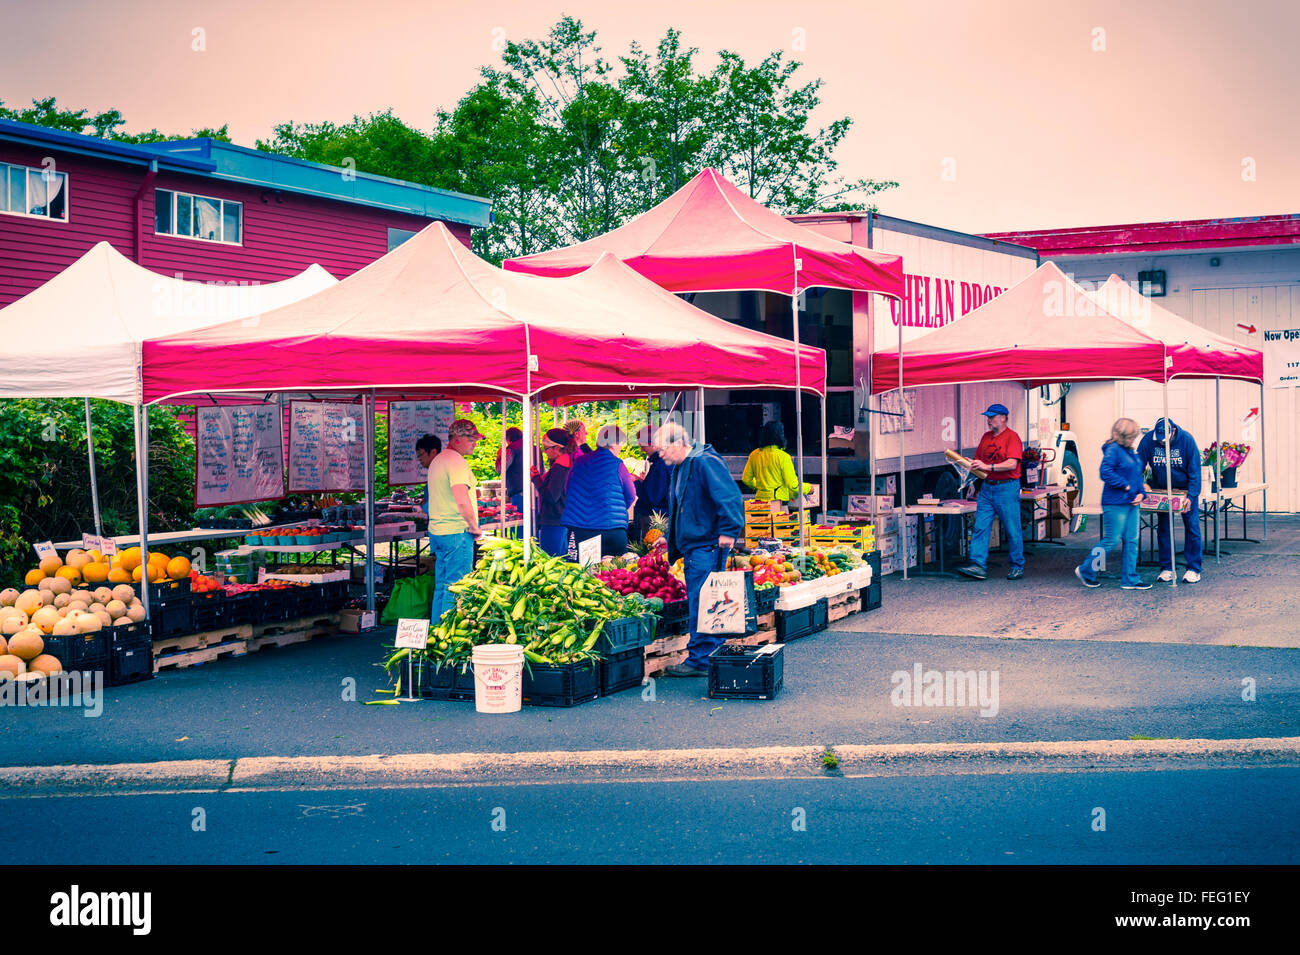 Chelan produrre, un open air farmers market in Sitka, Alaska, Stati Uniti d'America. La vendita di frutta e verdura biologiche. Foto Stock